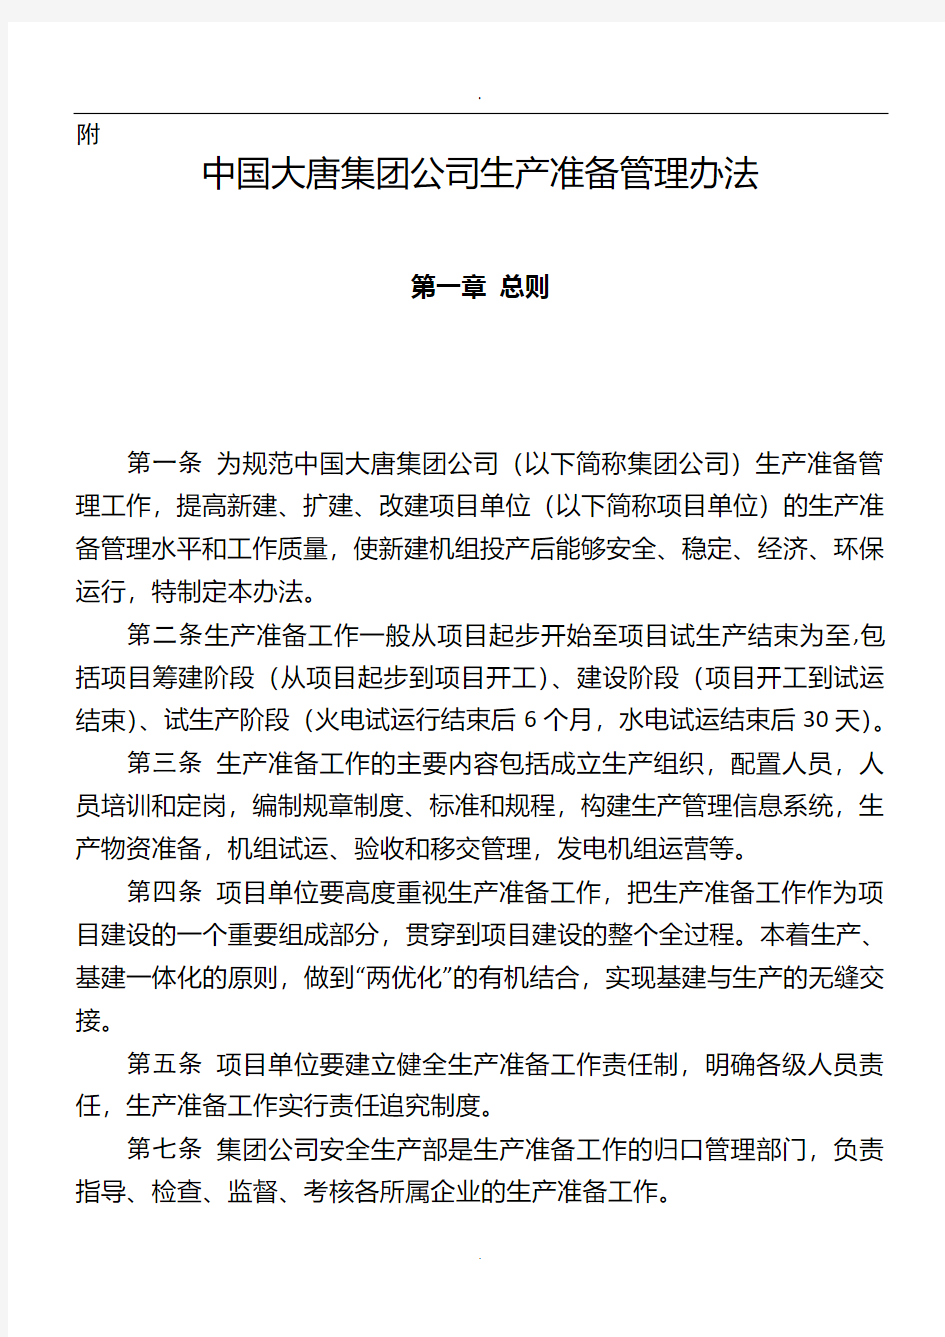 中国大唐集团公司生产准备管理办法